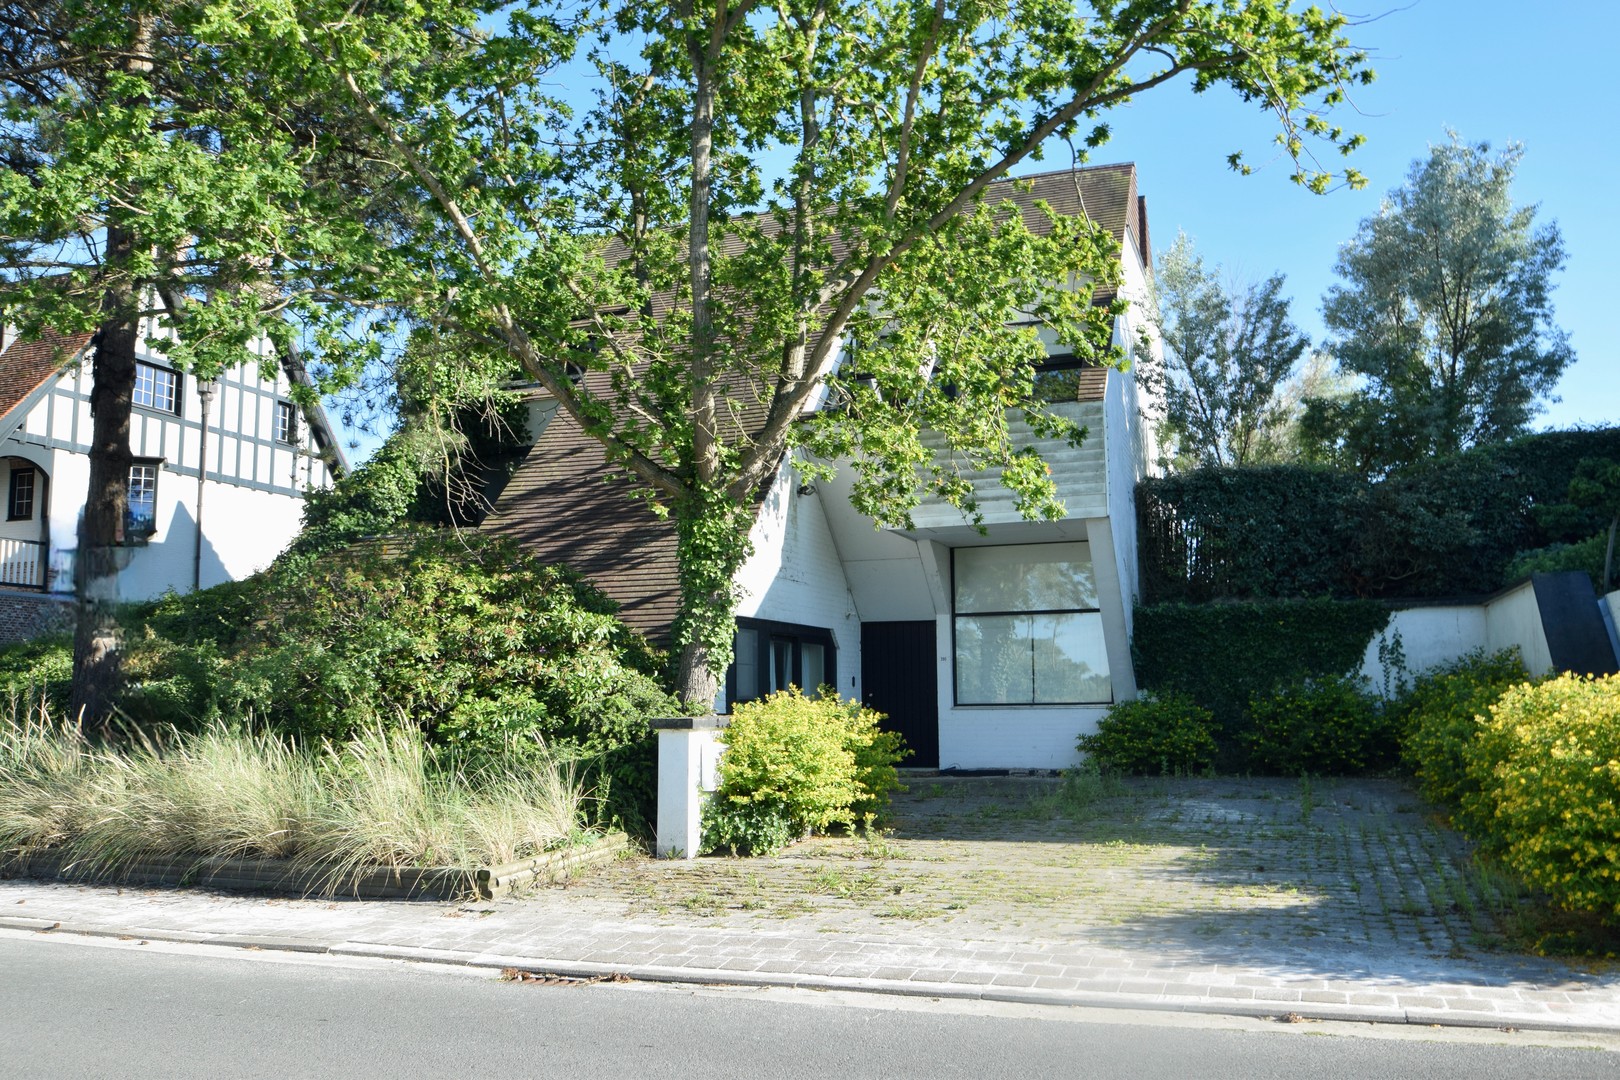 Knokke Real Estate woning/project grond te koop